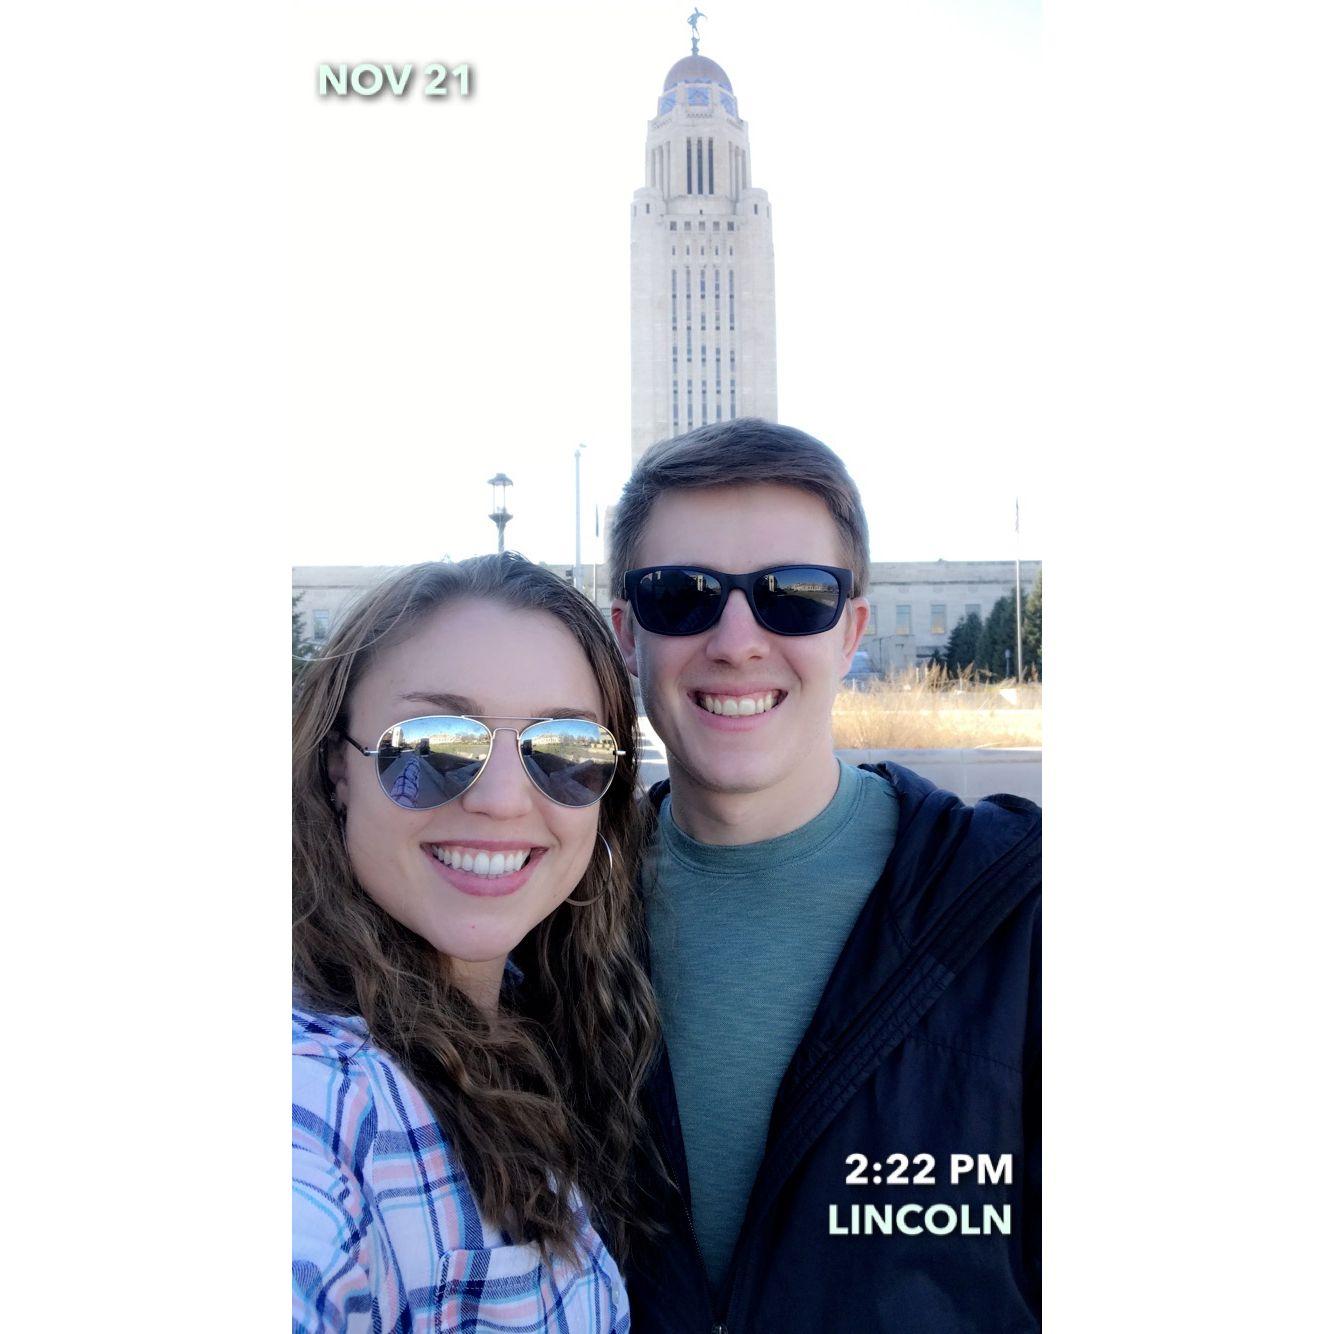 Capitol of Nebraska!